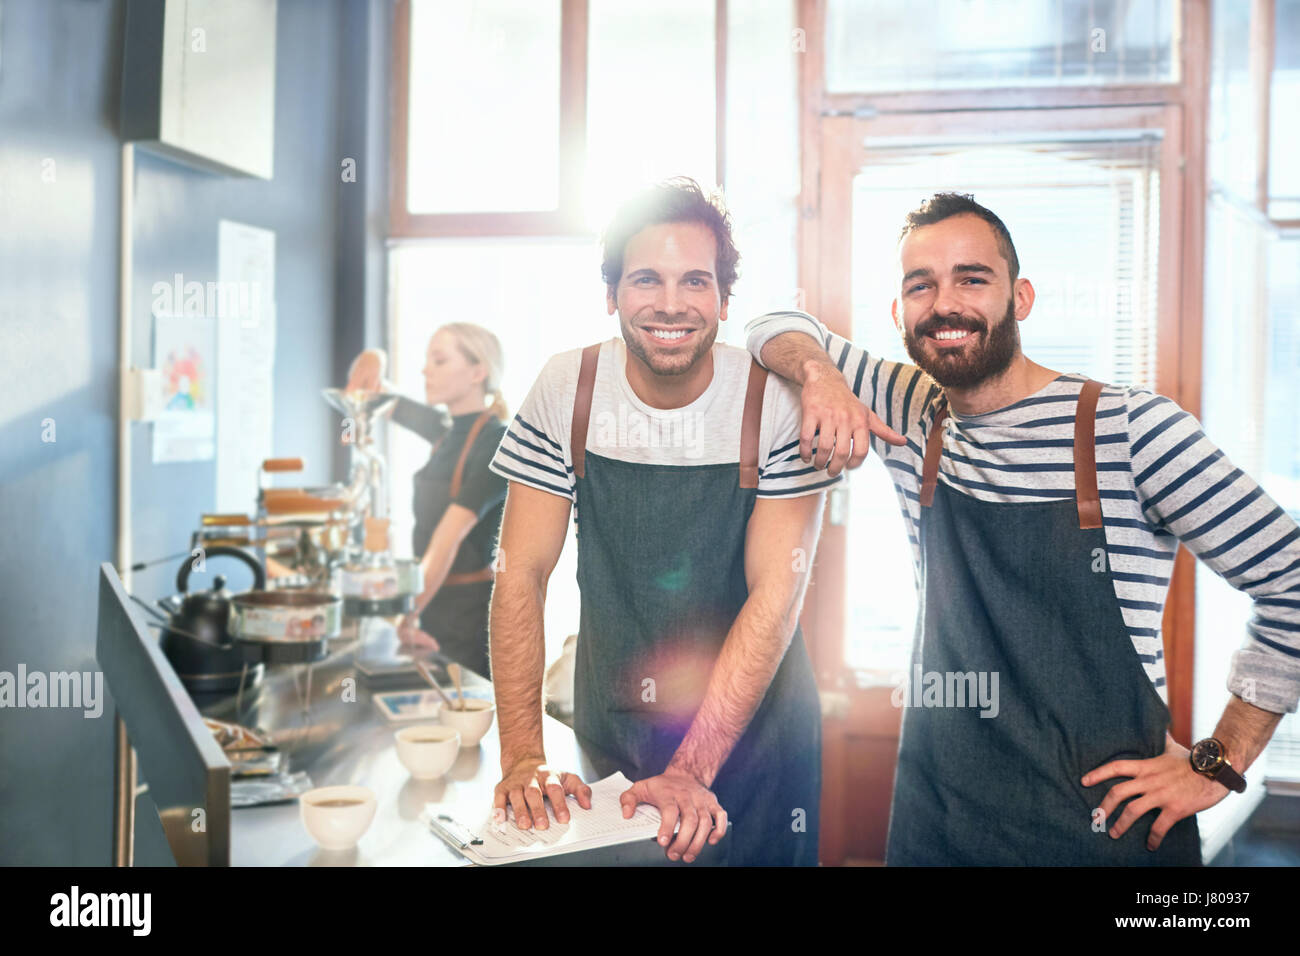 Porträt, Lächeln, zuversichtlich männlichen Kaffeeröster Verkostung Kaffee Stockfoto